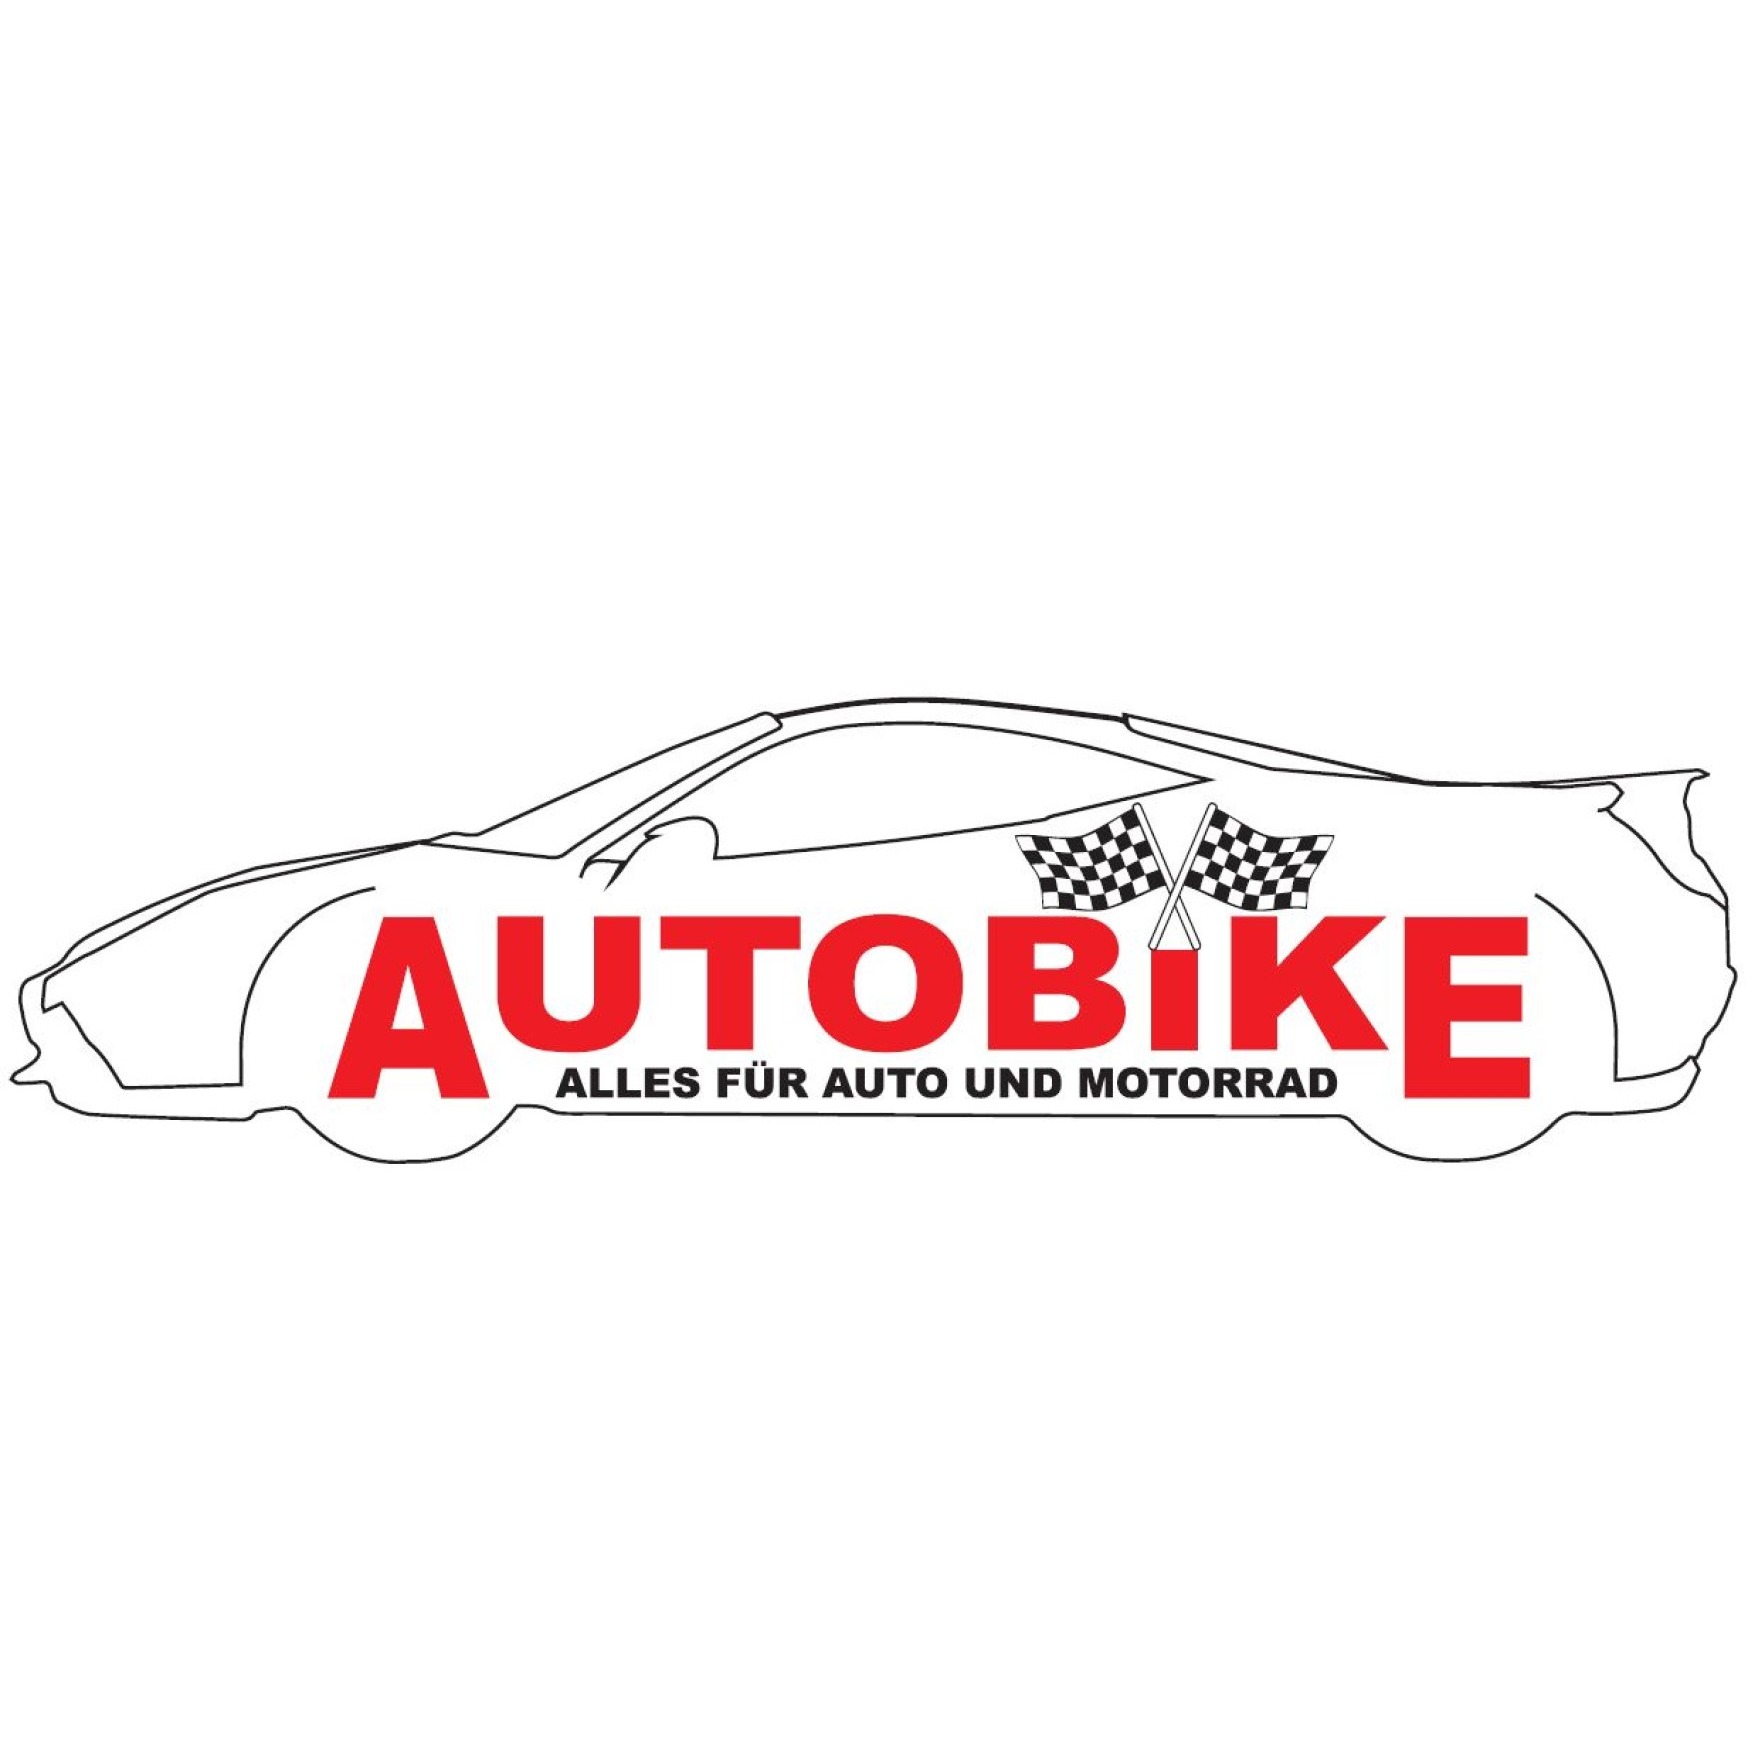 ABS Autobike GmbH